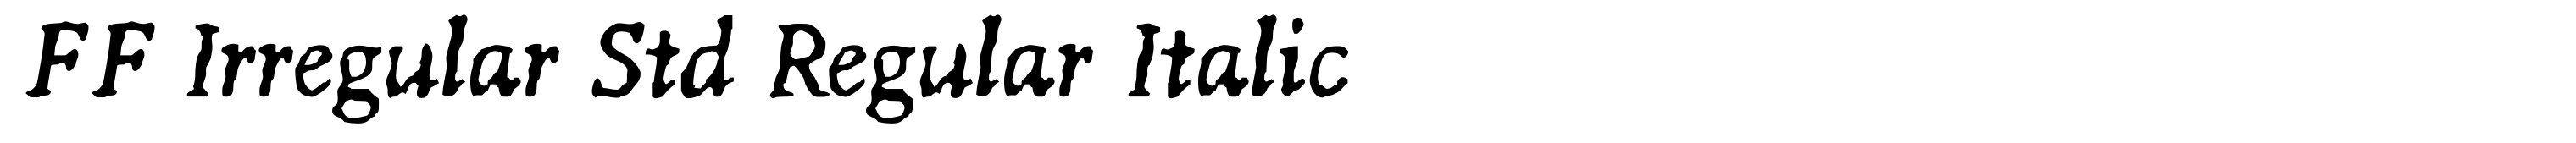 FF Irregular Std Regular Italic